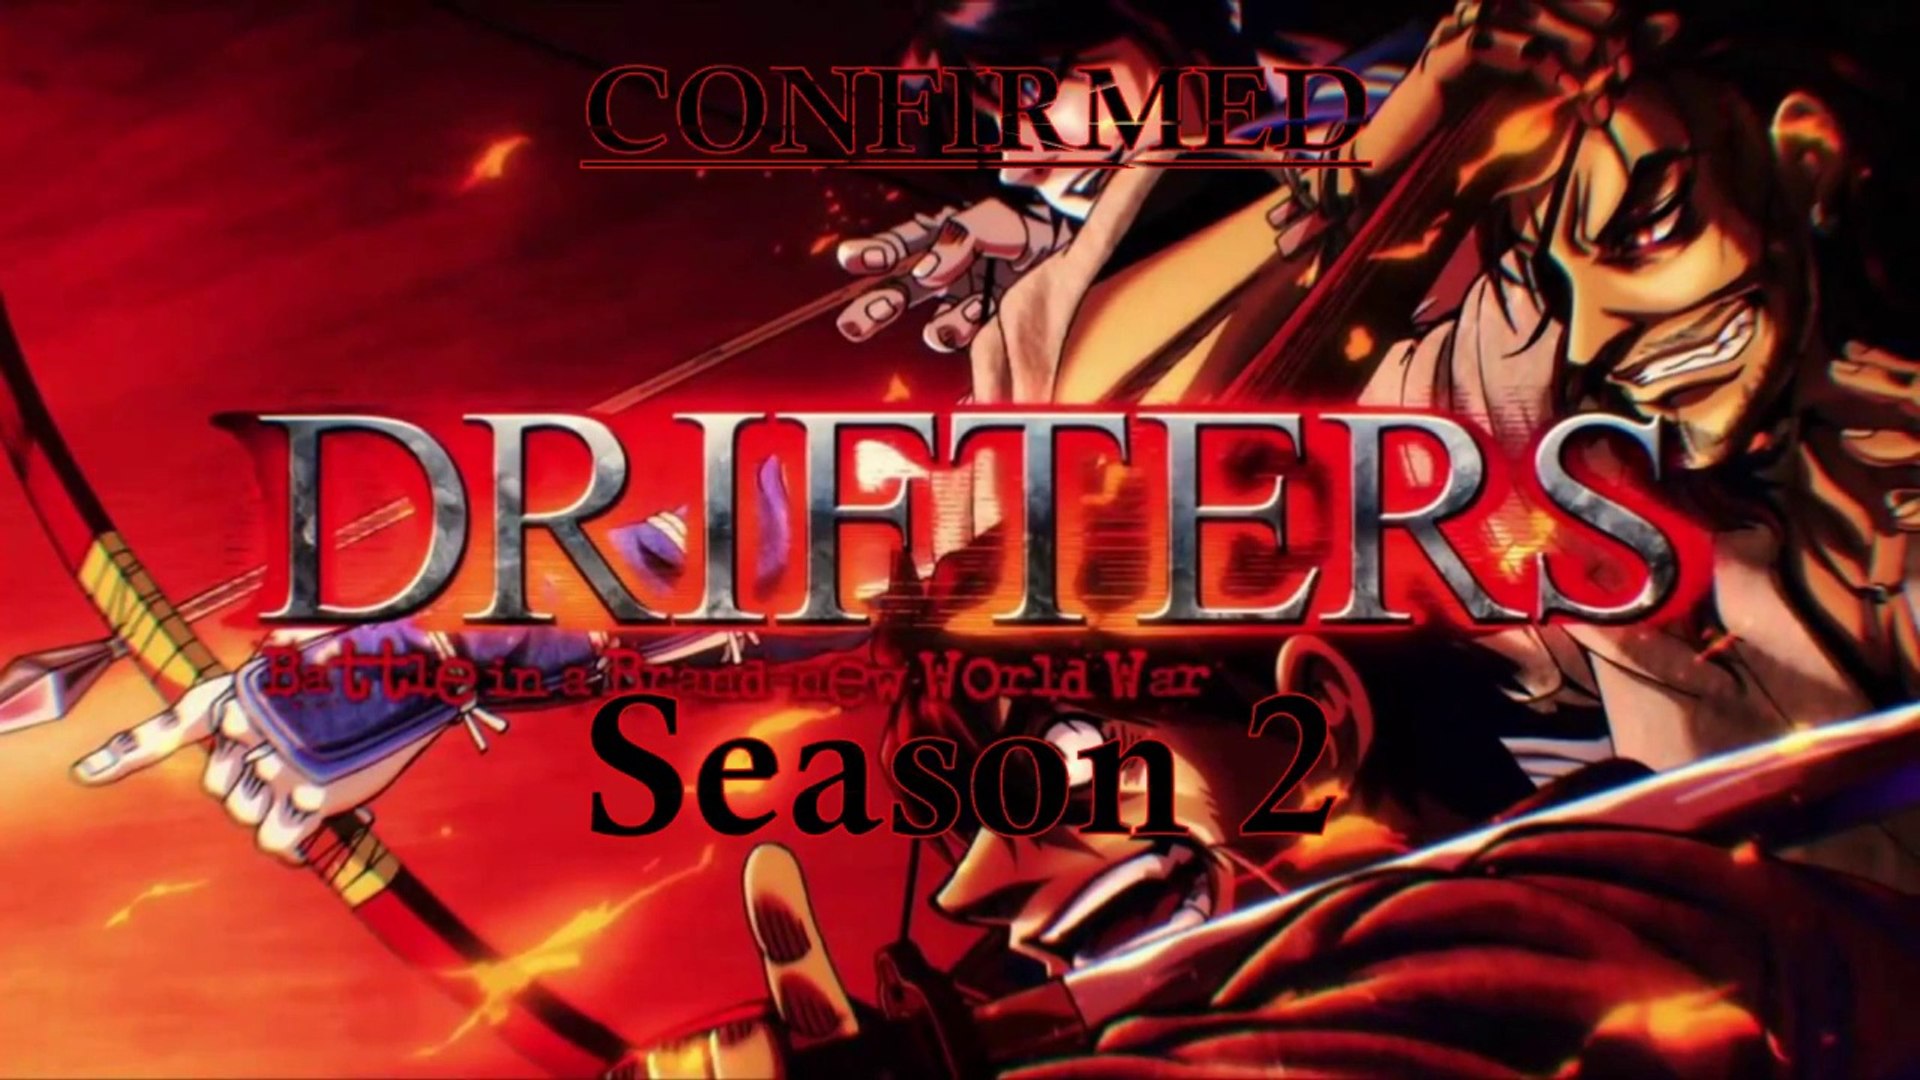 Drifters Season 2 Release Date 